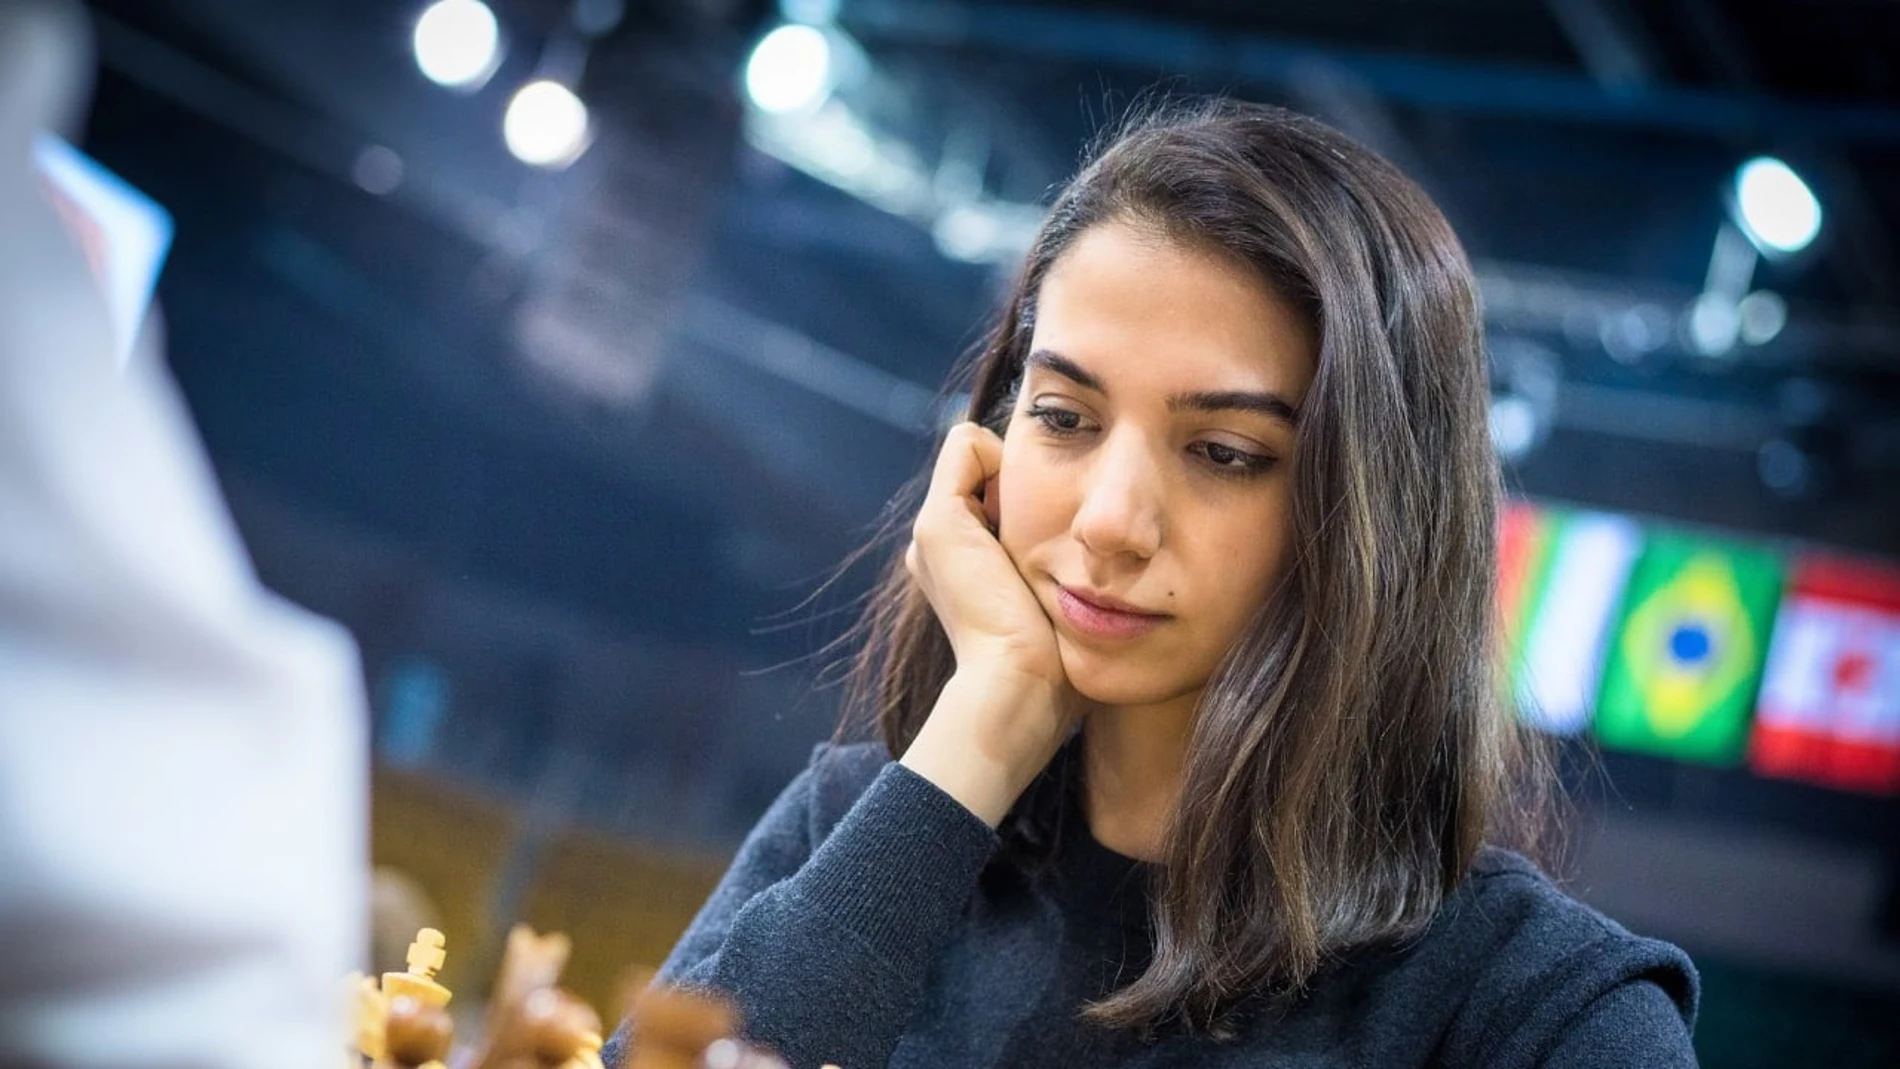 La iraní Sara Khadem compite en el torneo de ajedrez internacional de Almaty, en Kazajistán, sin "hiyab"